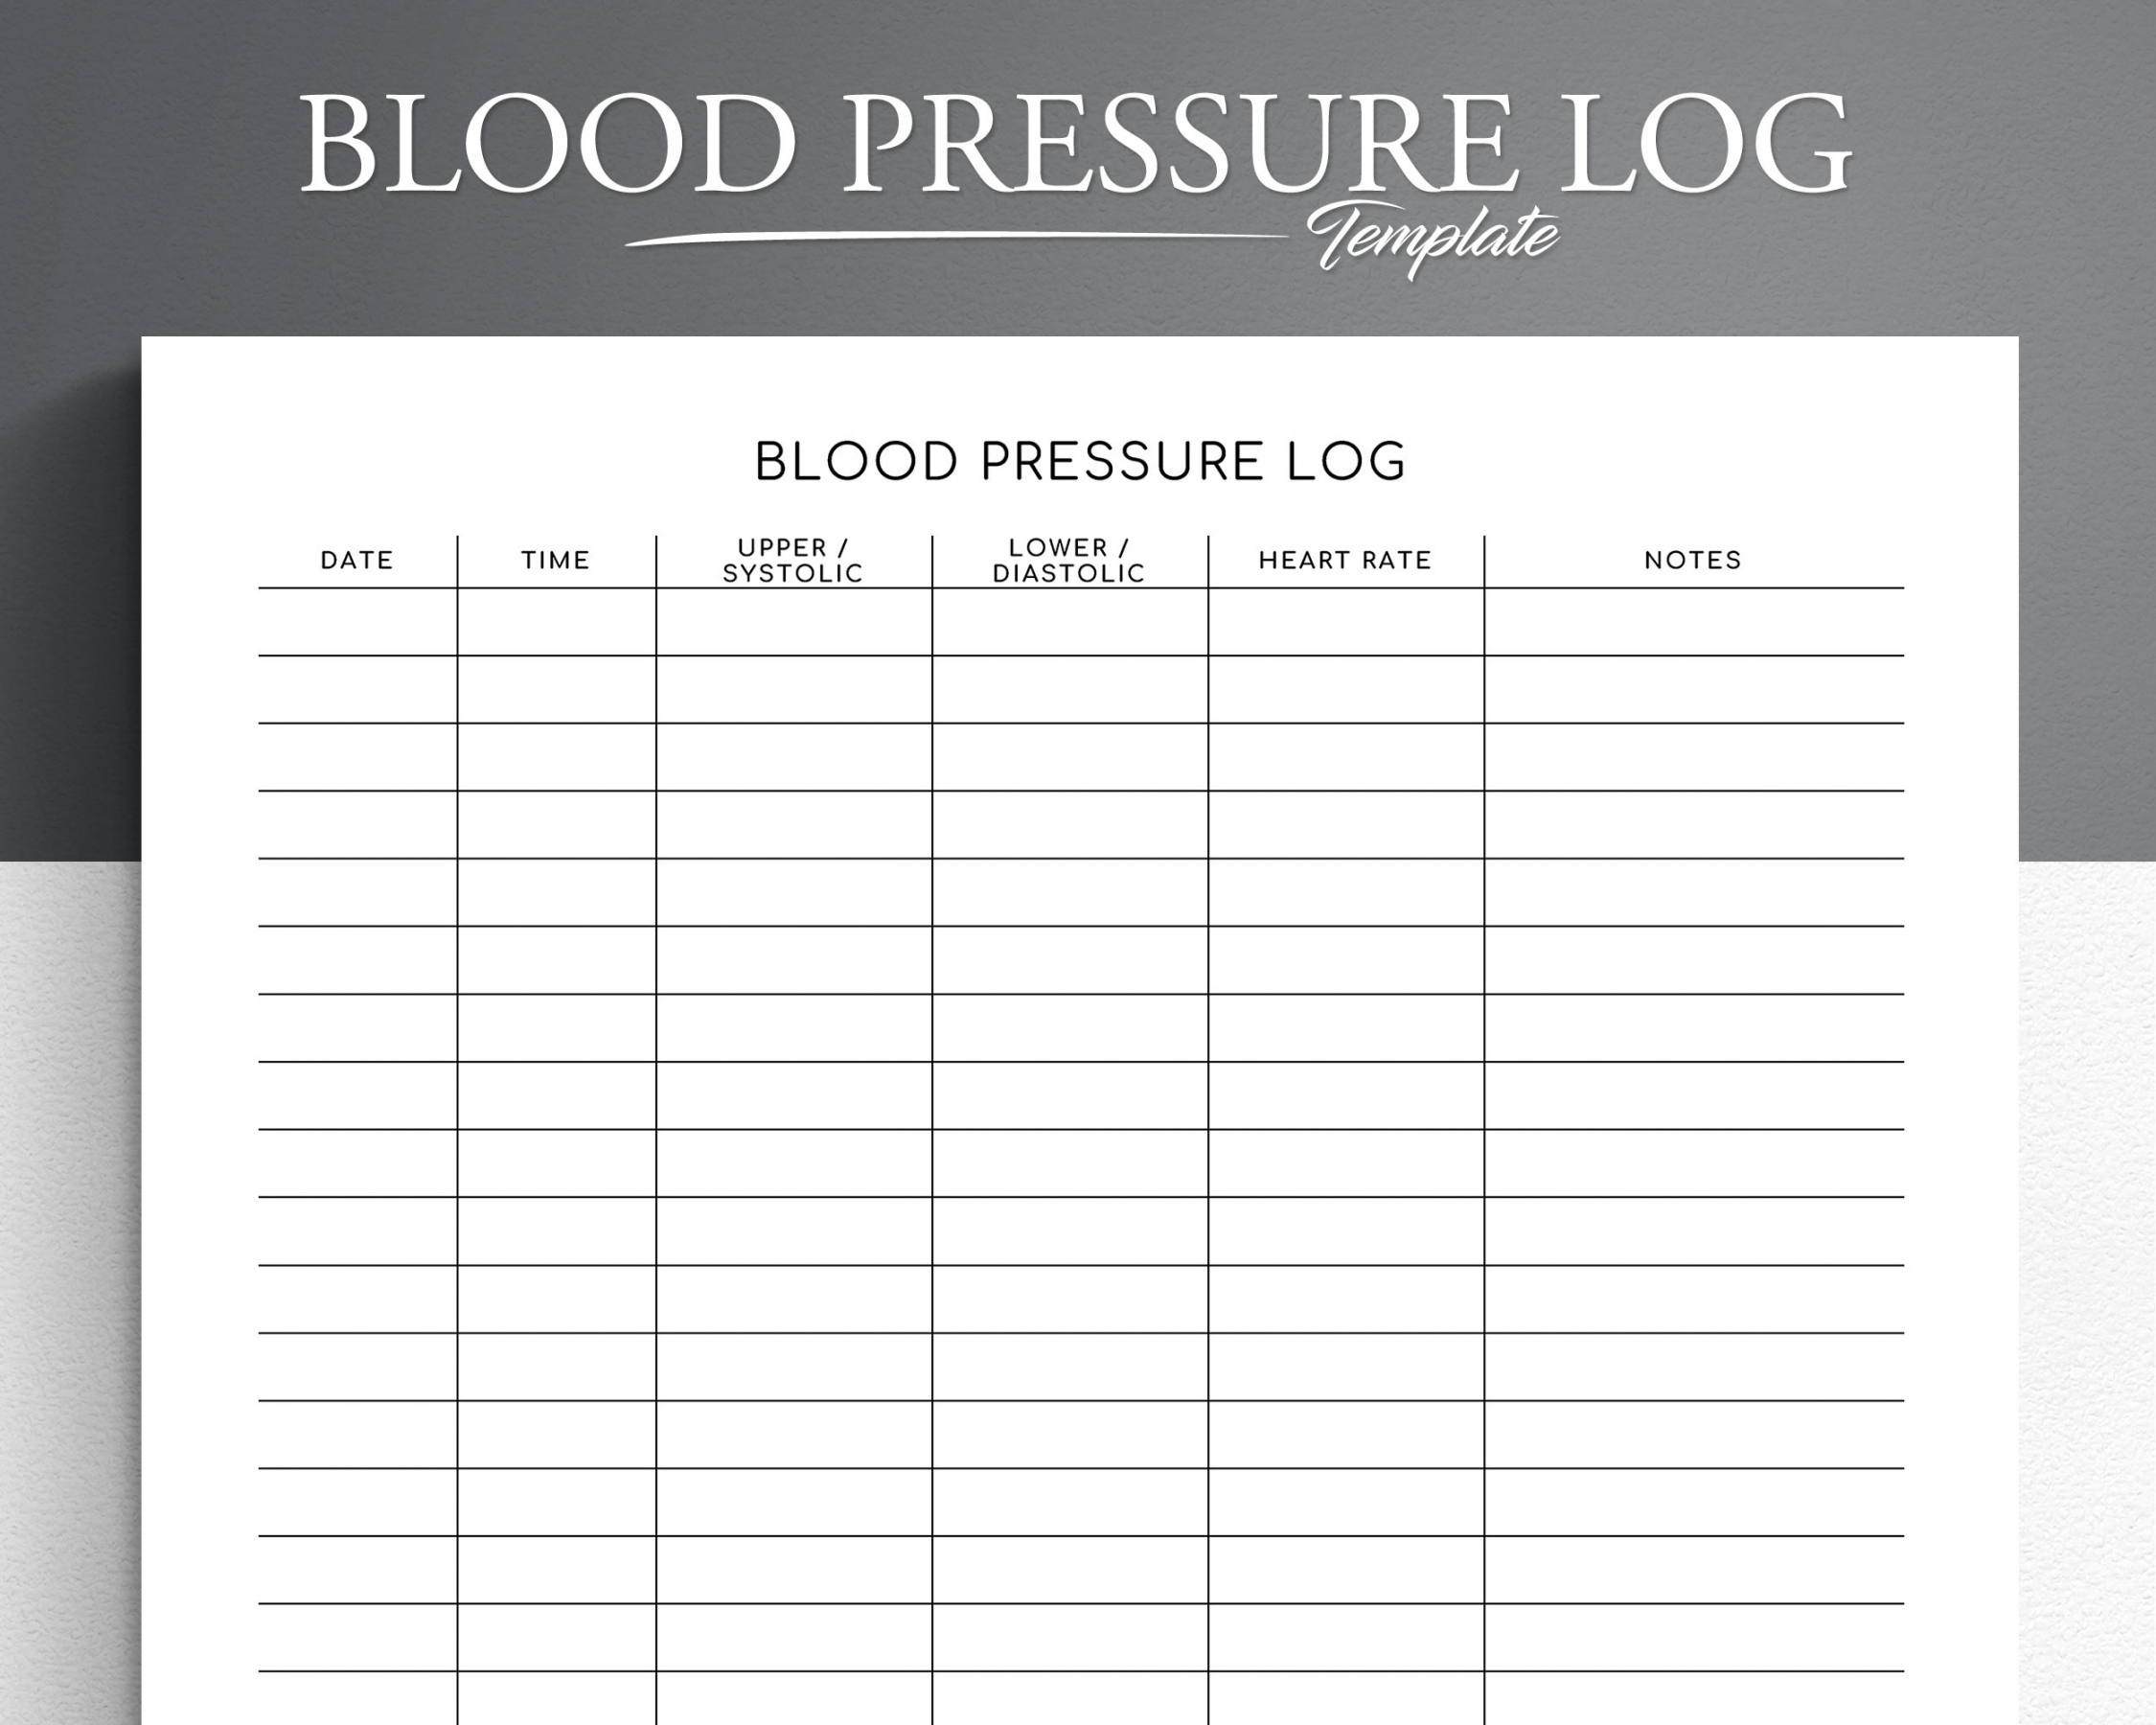 Blood Pressure Log Free Printable - Printable - Blood Pressure Log Editable Printable